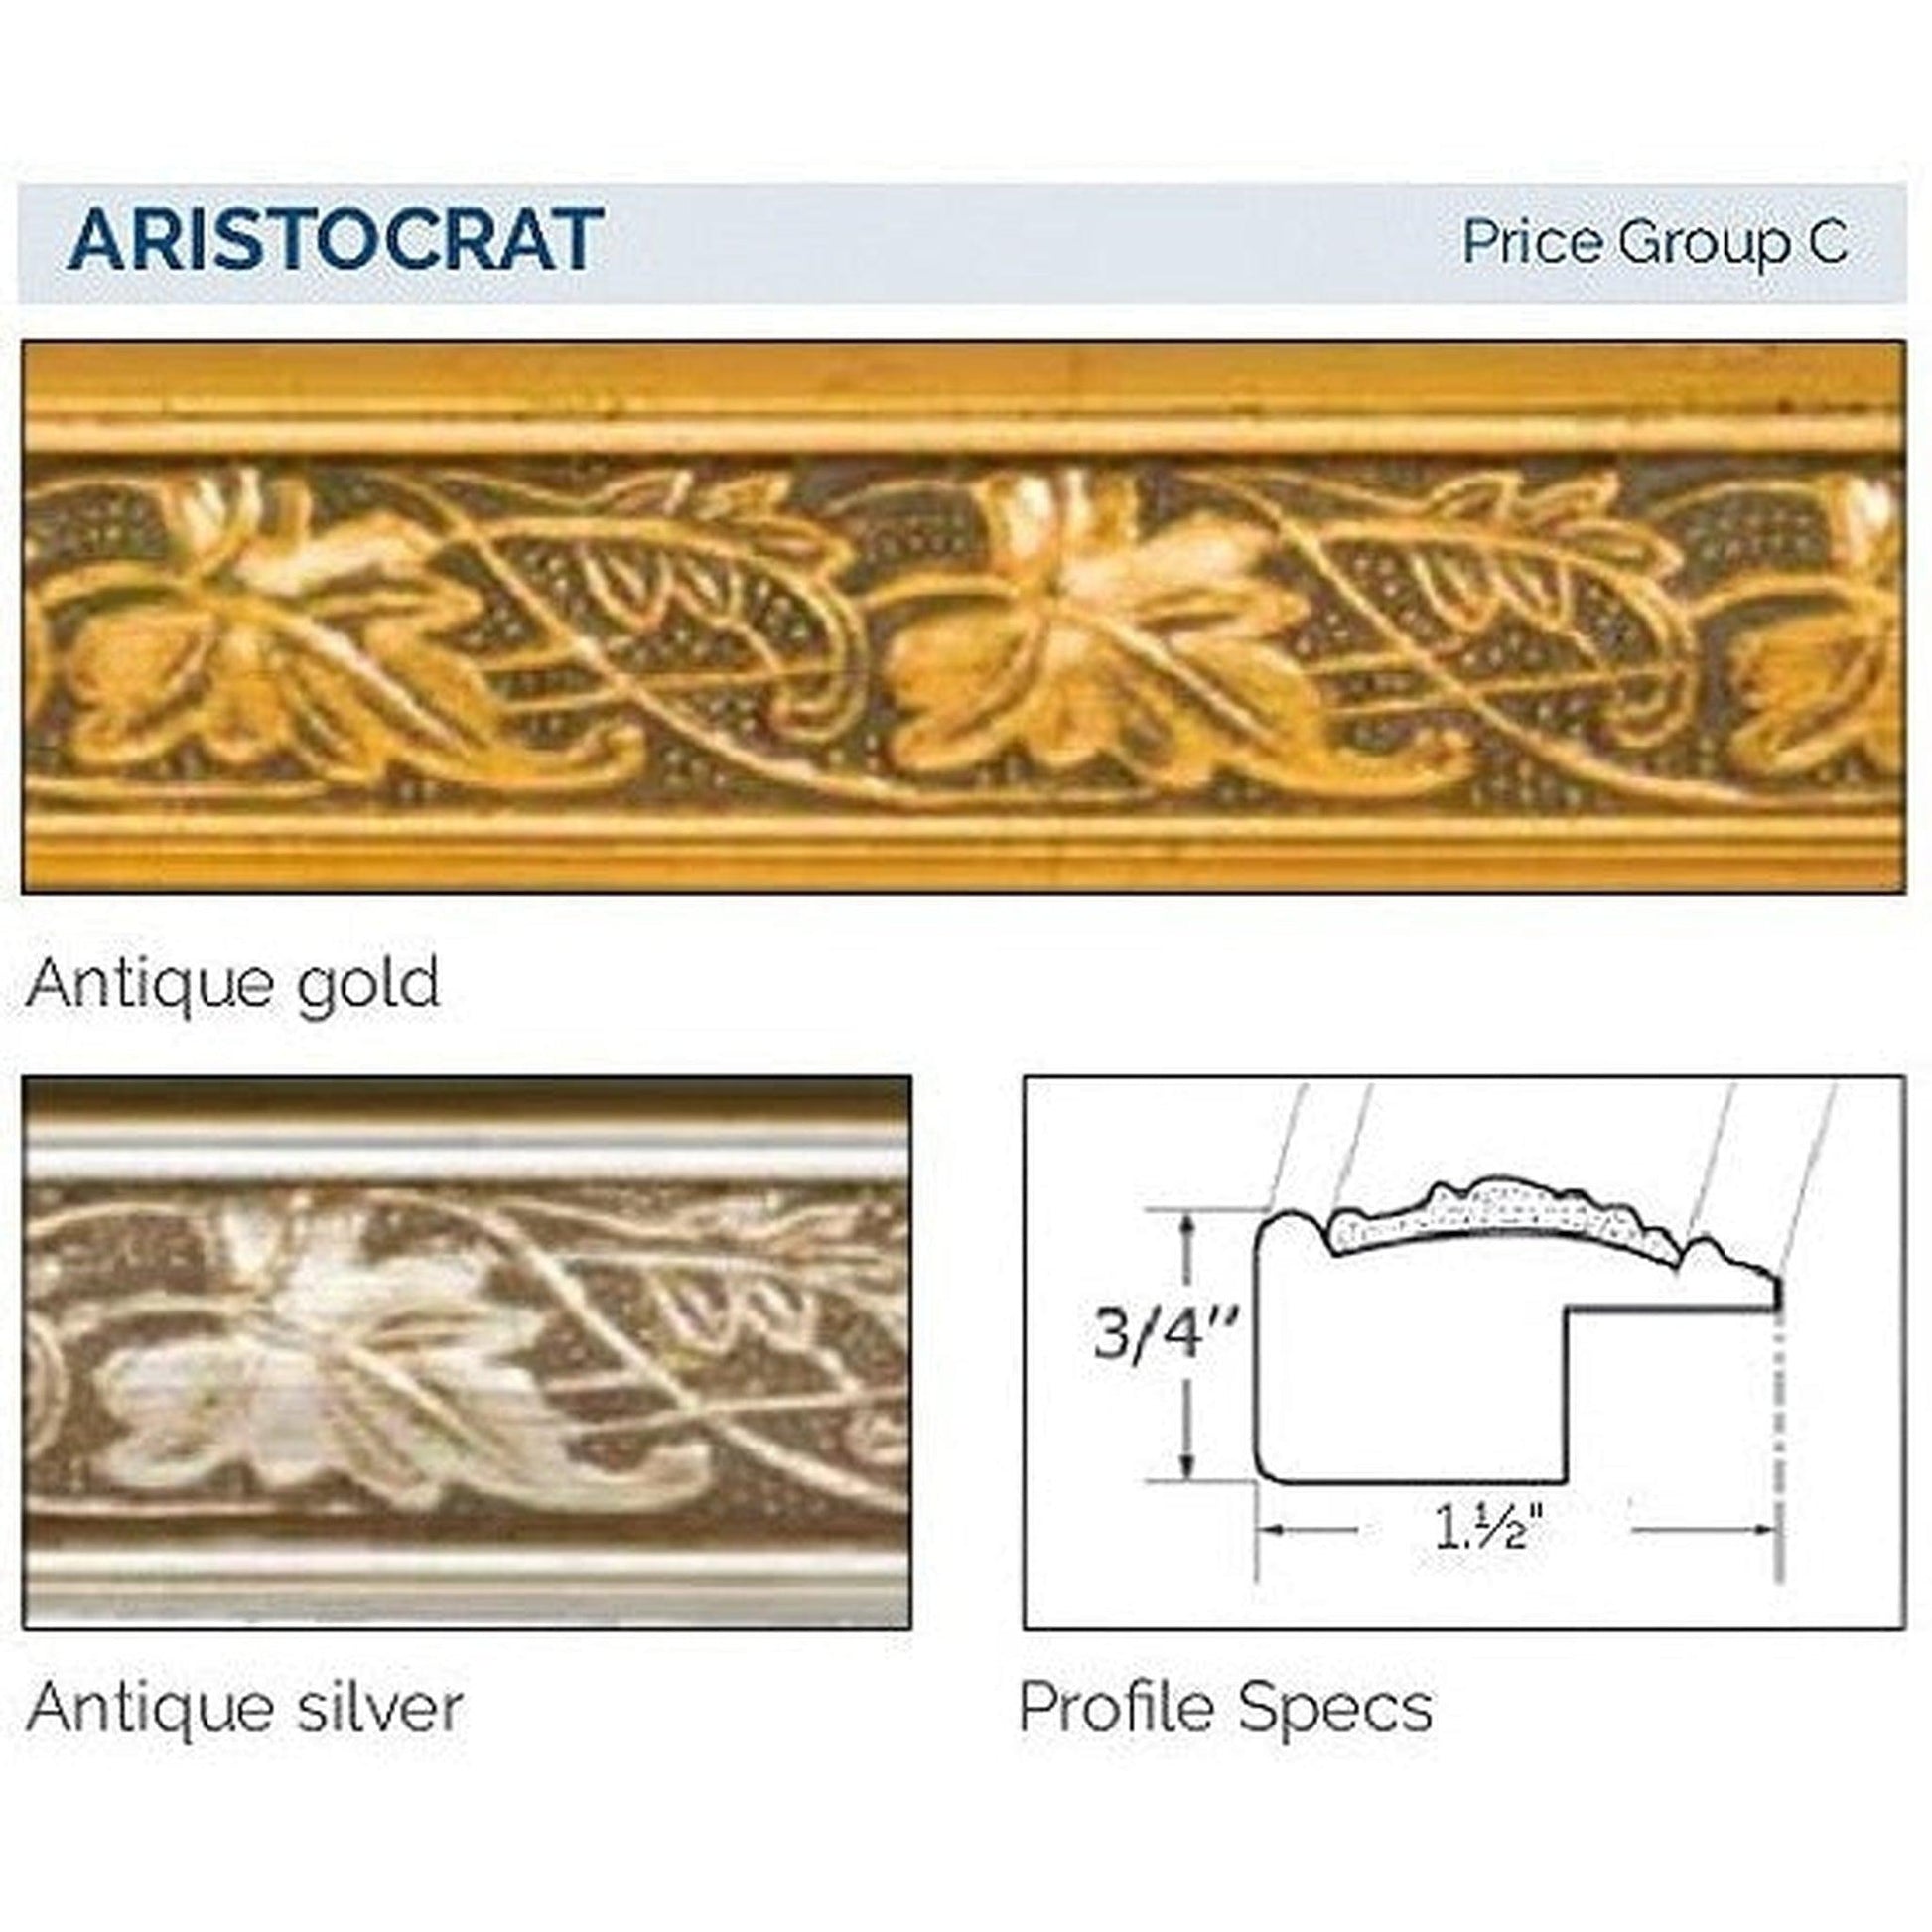 Afina Signature 20" x 26" Aristocrat Antique Gold Recessed Reversible Hinged Single Door Medicine Cabinet With Beveled Edge Mirror